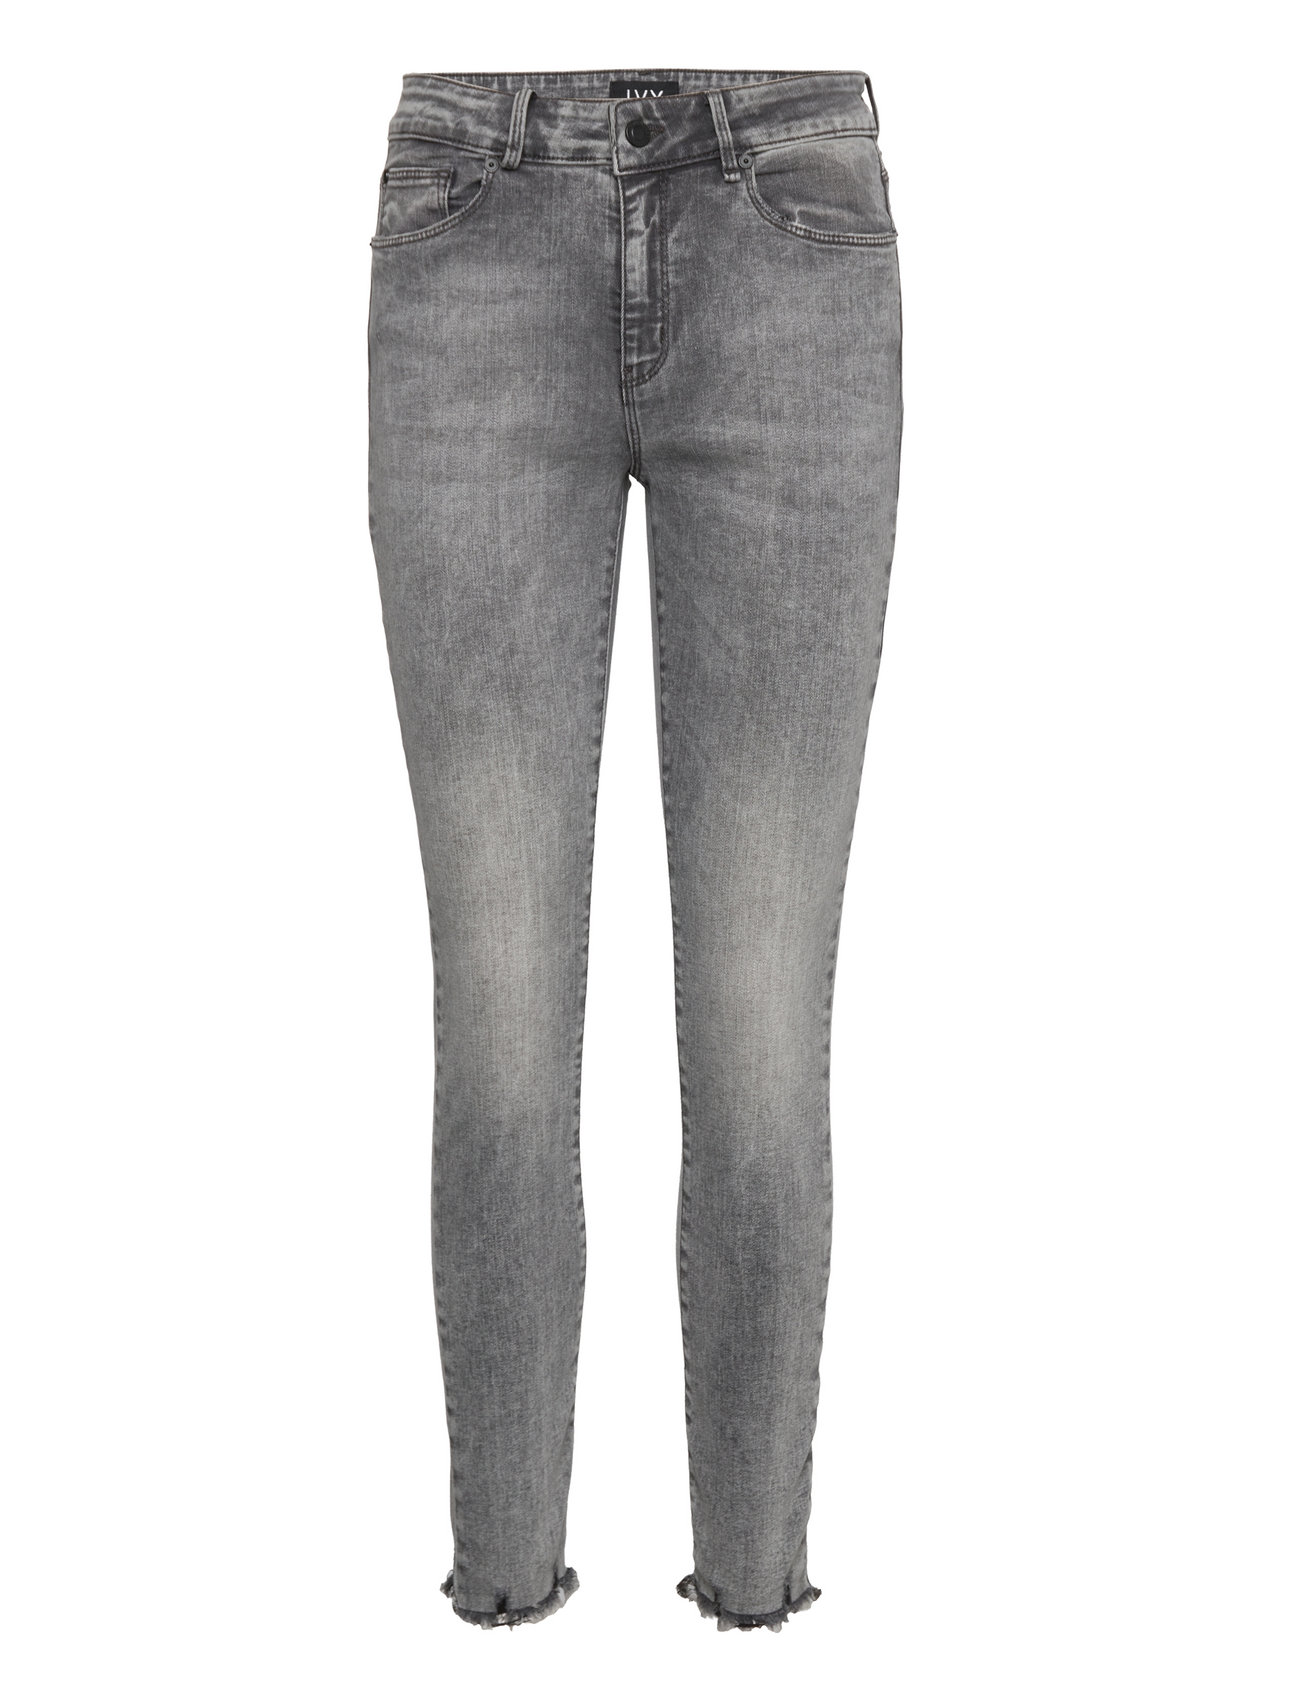 Alexa Earth Jeans Wash New Grey Skinny Jeans Grå IVY Copenhagen